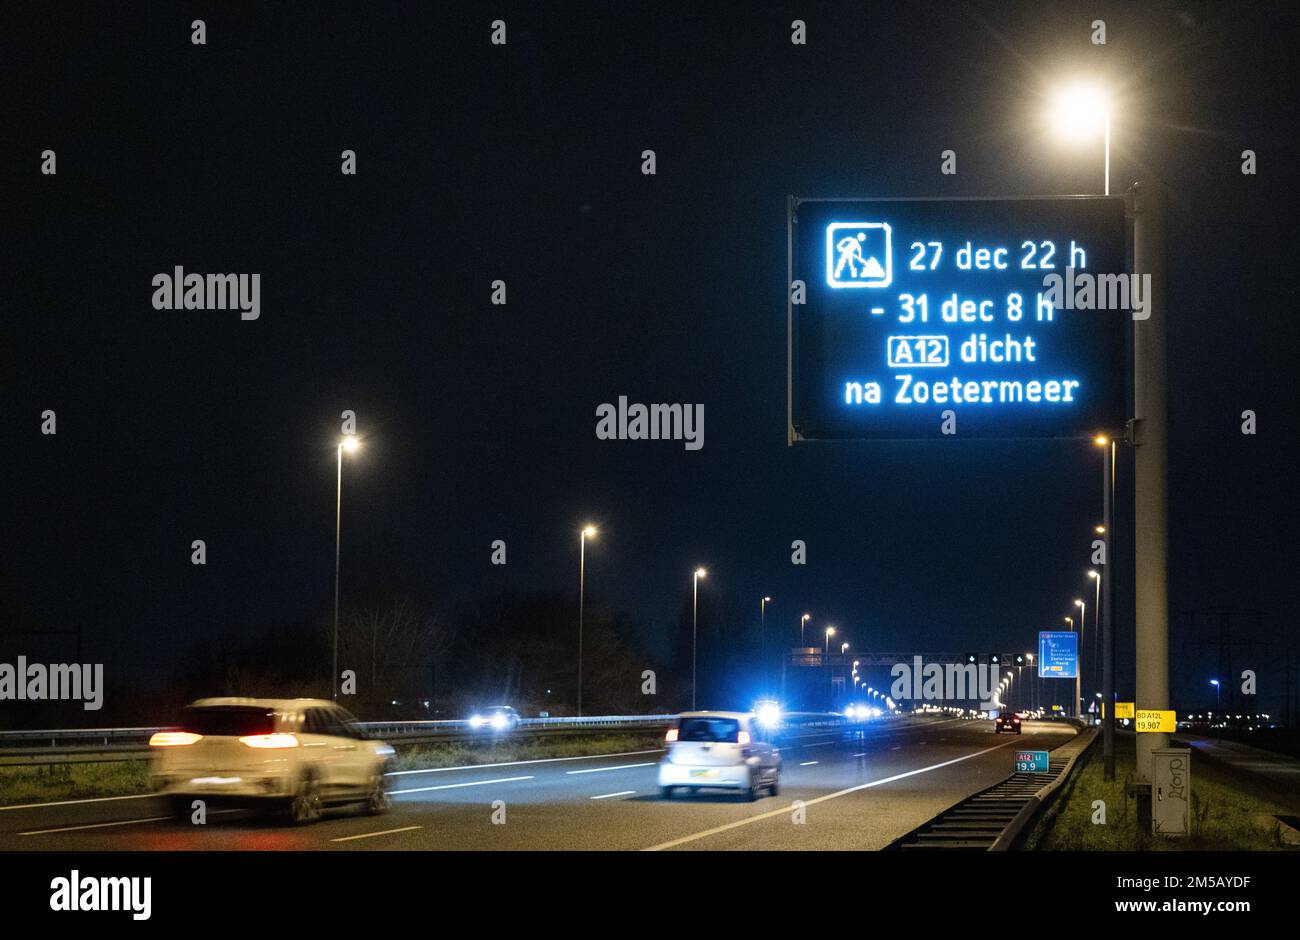 ZOETERMEER - Matrix des signes indiquent que le A12 est fermé à Zoetermeer. L'autoroute sera fermée jusqu'à 8 h sur 31 décembre. La municipalité retirera alors une partie du pont Nelson Mandela. ANP LEX VAN LIESHOUT pays-bas - belgique OUT Banque D'Images